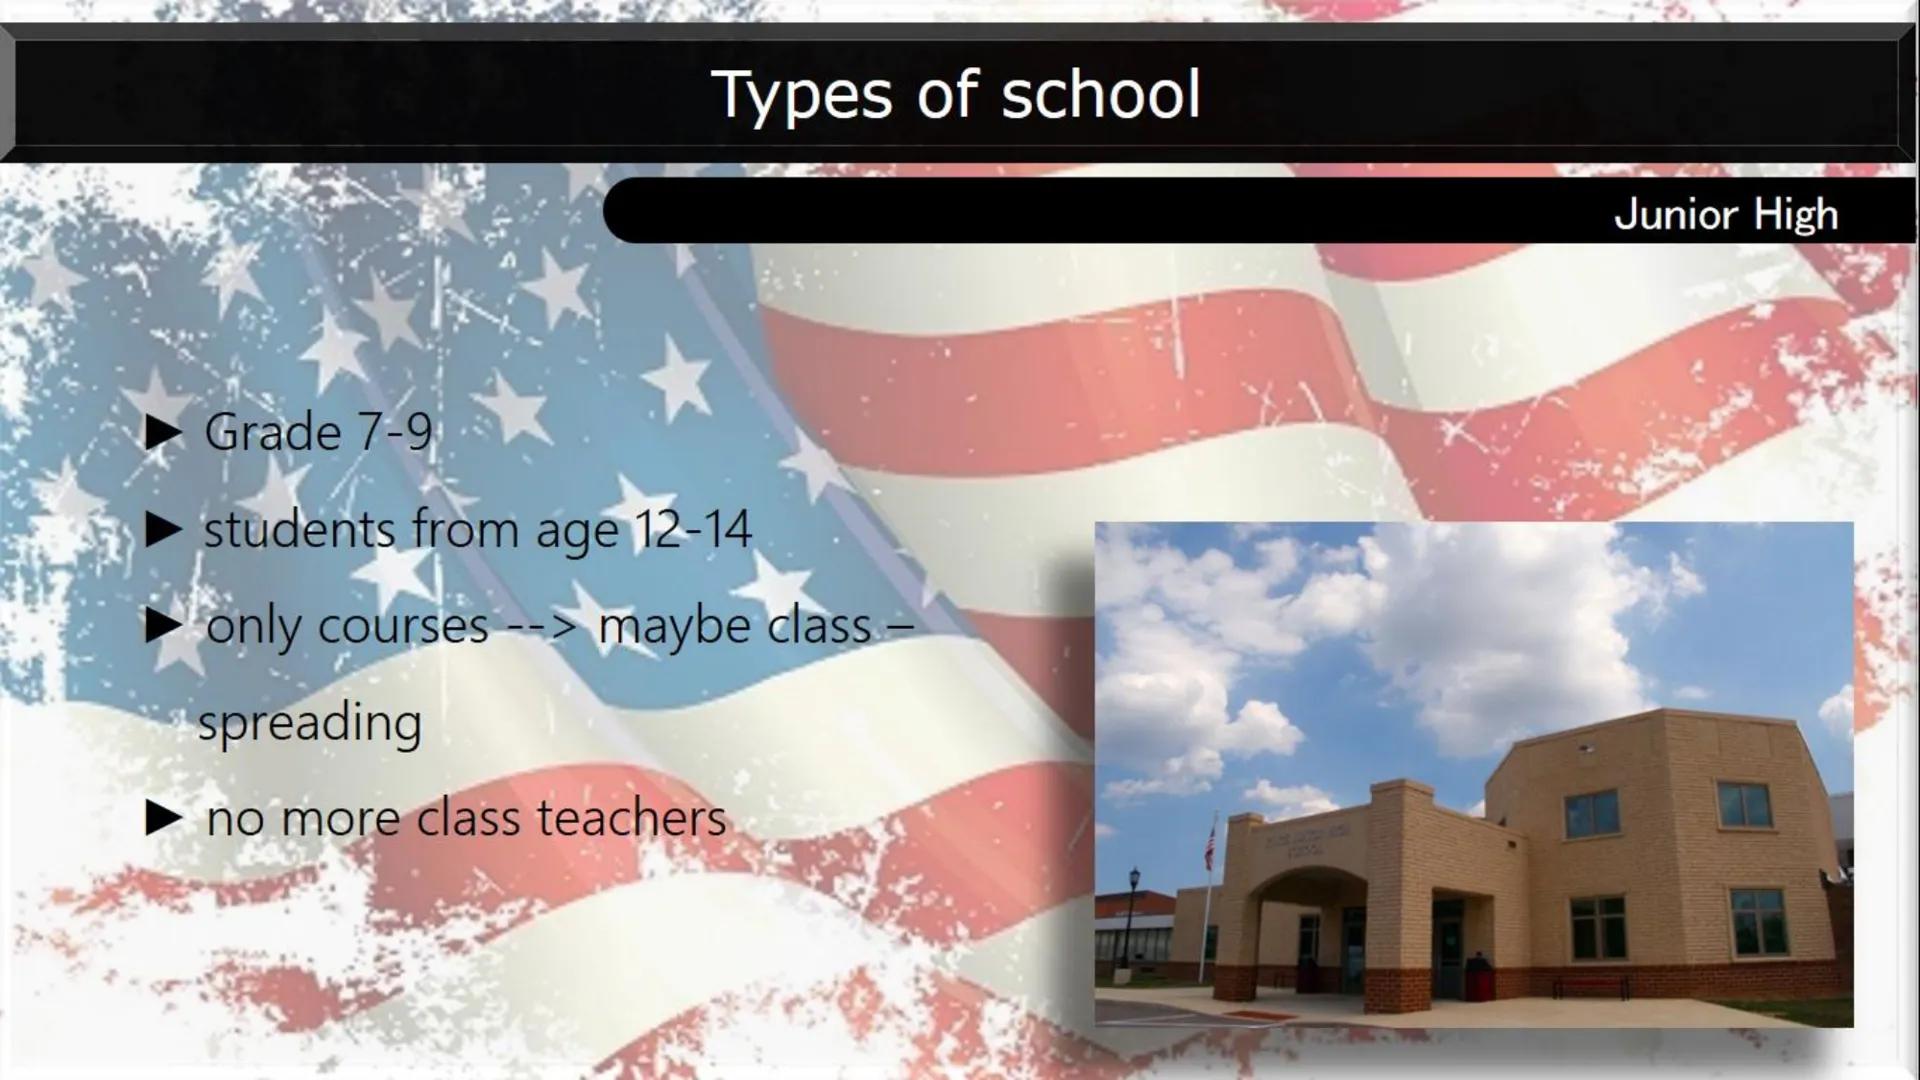 Types of school:
Many school types:
AMERICAN SCHOOL SYSTEM
A
B
Elementary school
Middle school
Junior High
High school
Mark system:
Marks fr